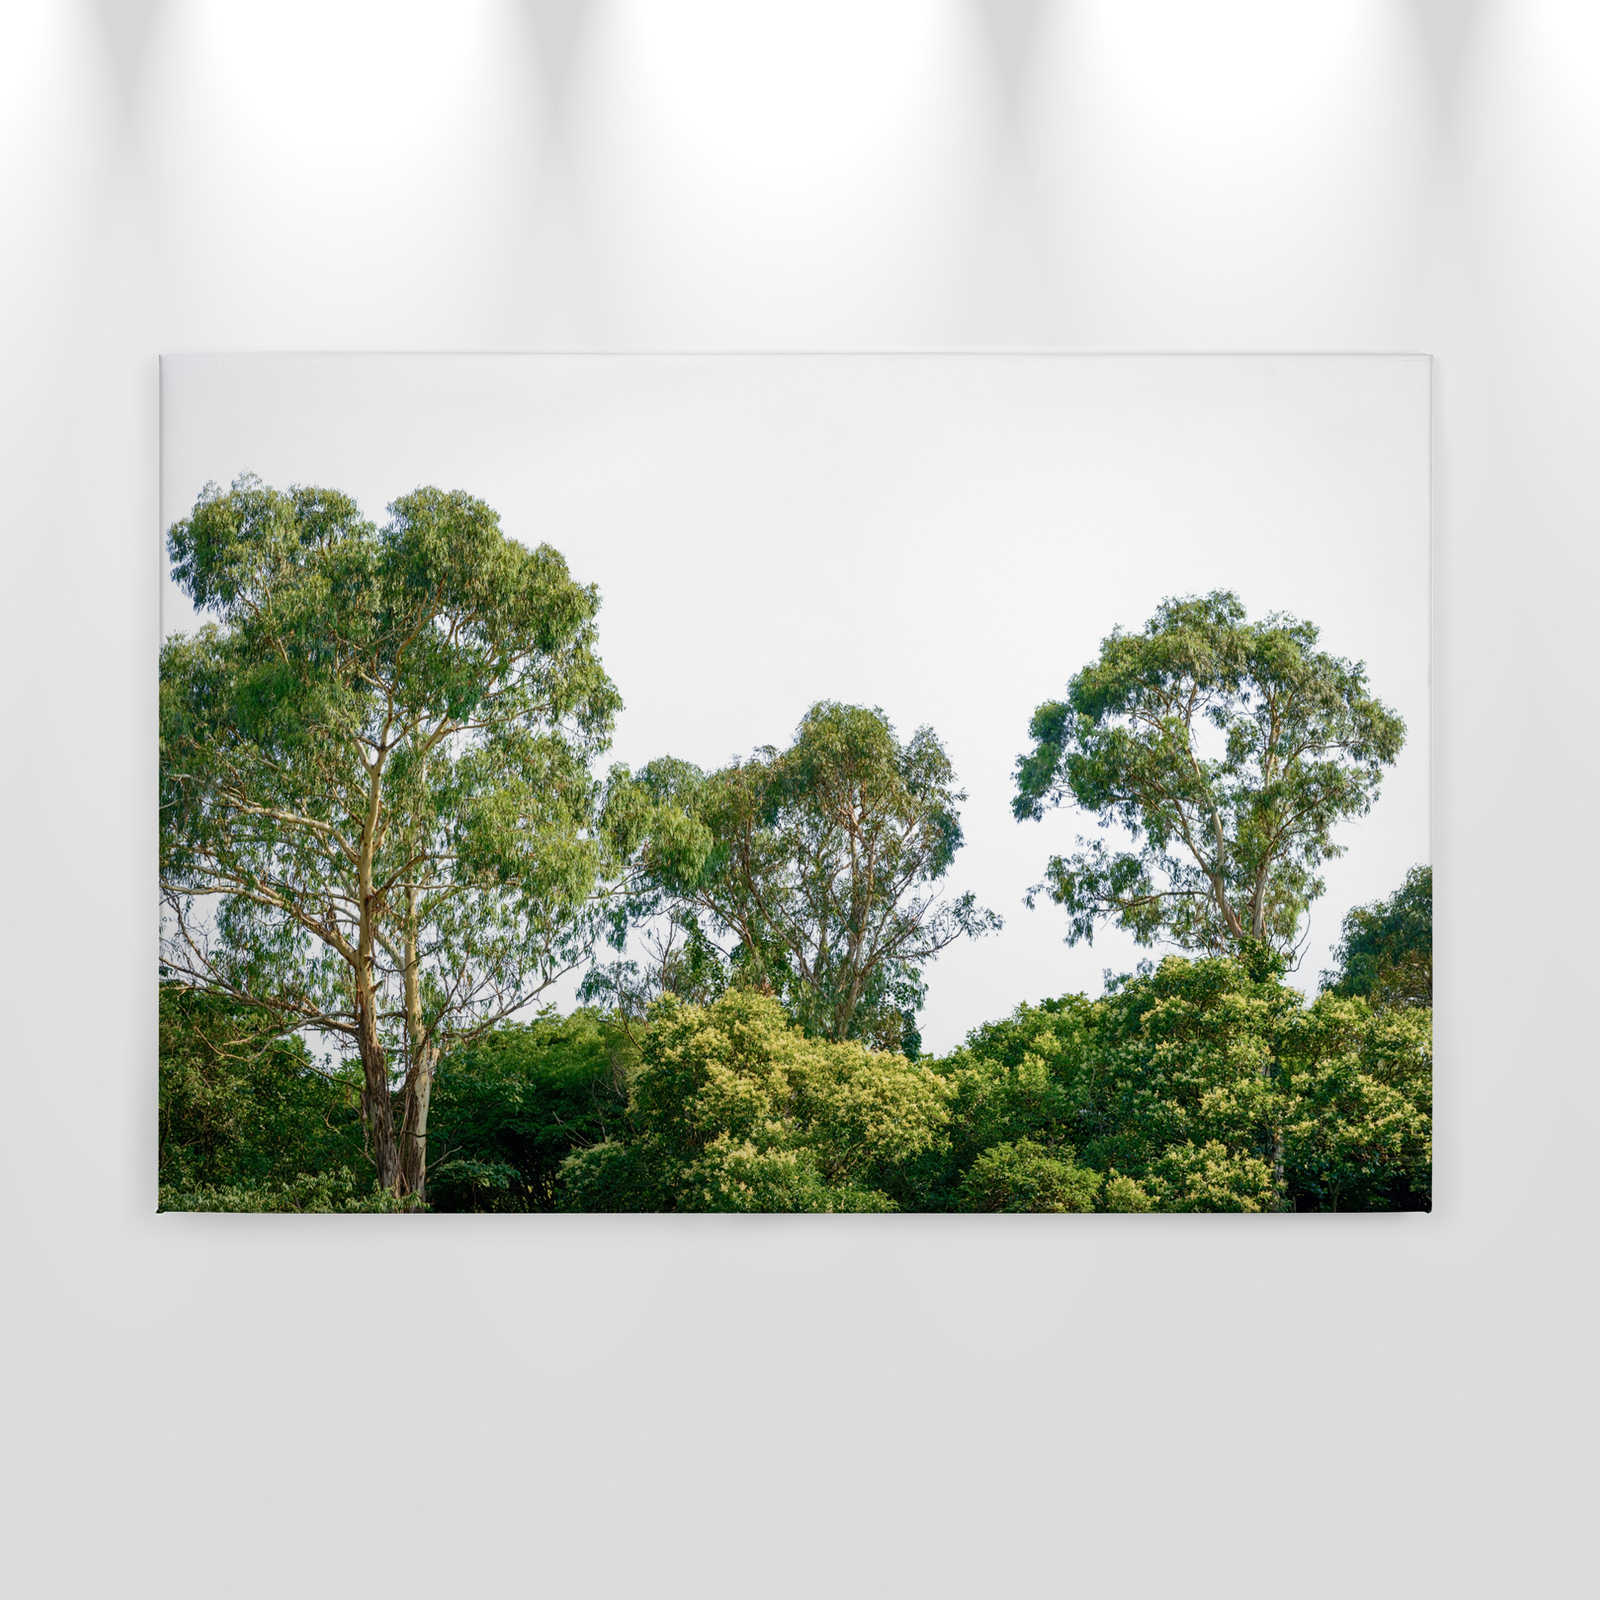             Toile avec cimes d'arbres, motif de forêt - 0,90 m x 0,60 m
        